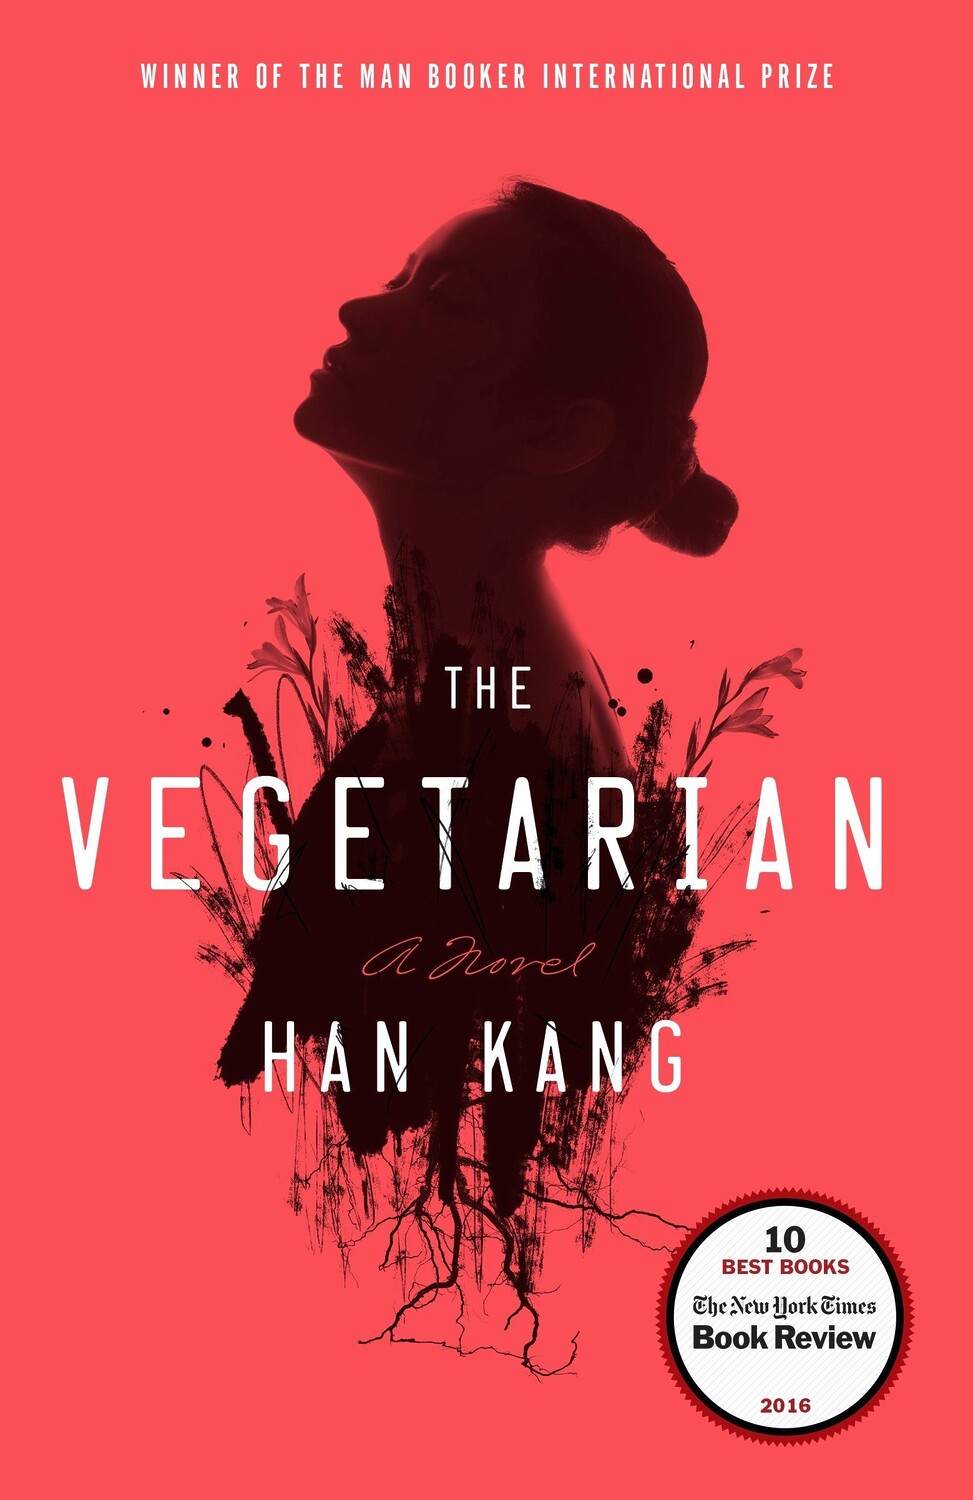 Han Kang. The Vegetarian.